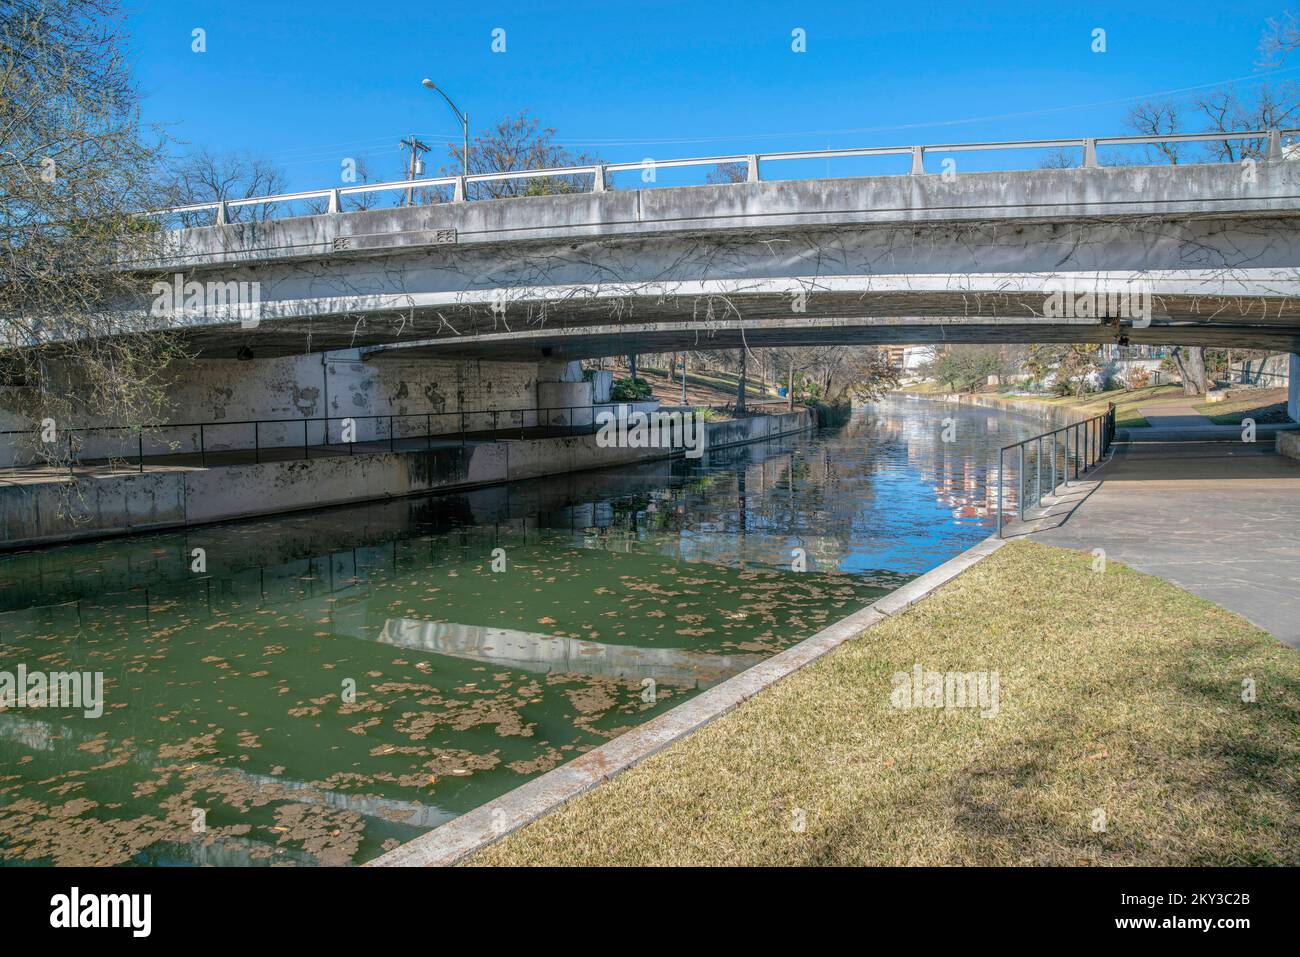 San Antonio River Walk mit Brücke mit Blick auf den malerischen Kanal und den blauen Himmel. Das Wasser wird von gepflasterten Wegen oder Fußwegen für Touristen flankiert, r Stockfoto